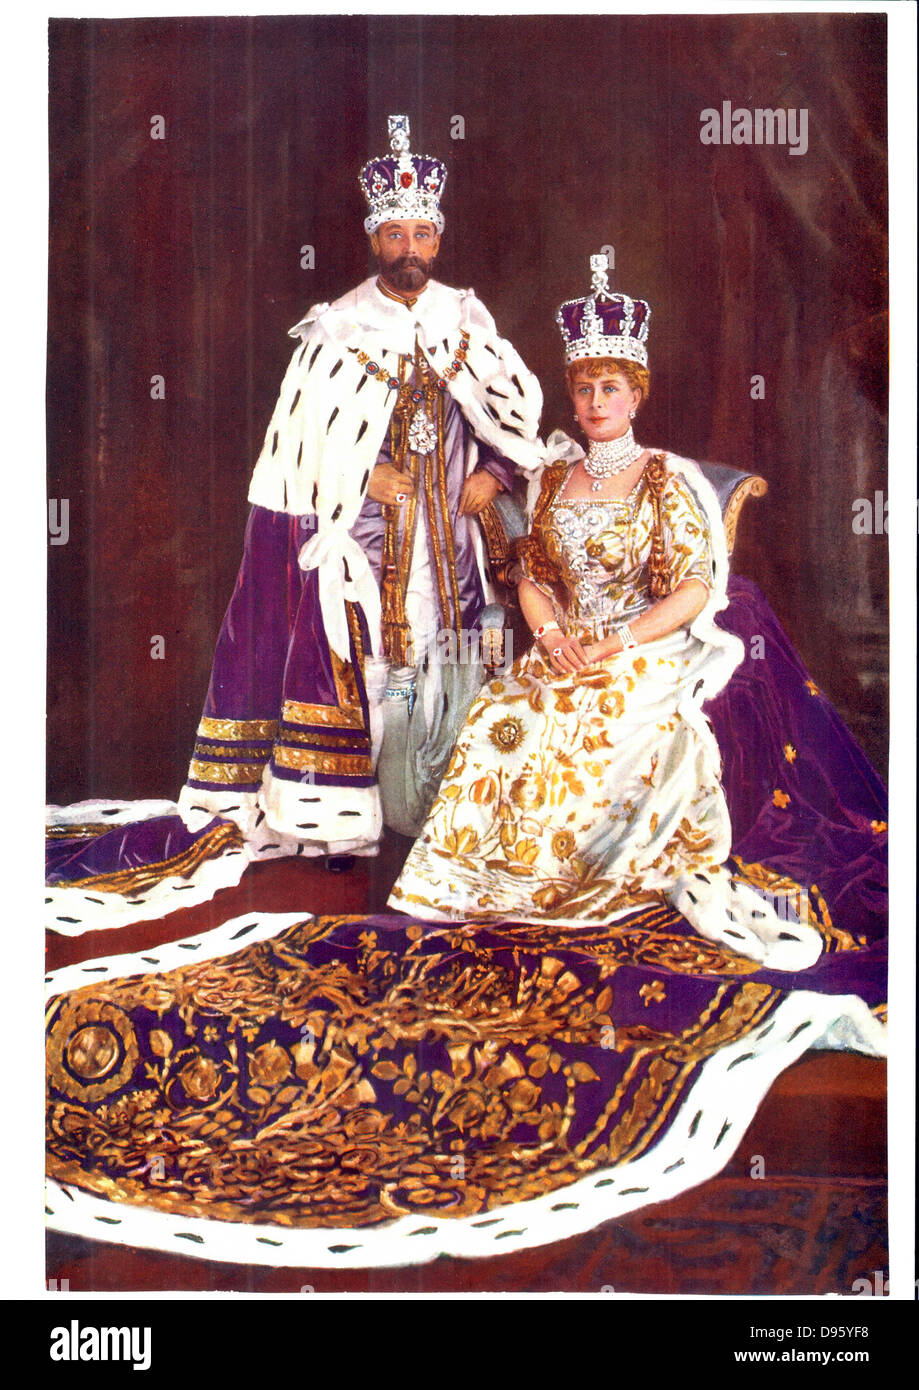 Georg v., König von Großbritannien 1910-1936, mit seiner Gemahlin Königin  Mary in Krönung Bademäntel, 1911 Stockfotografie - Alamy